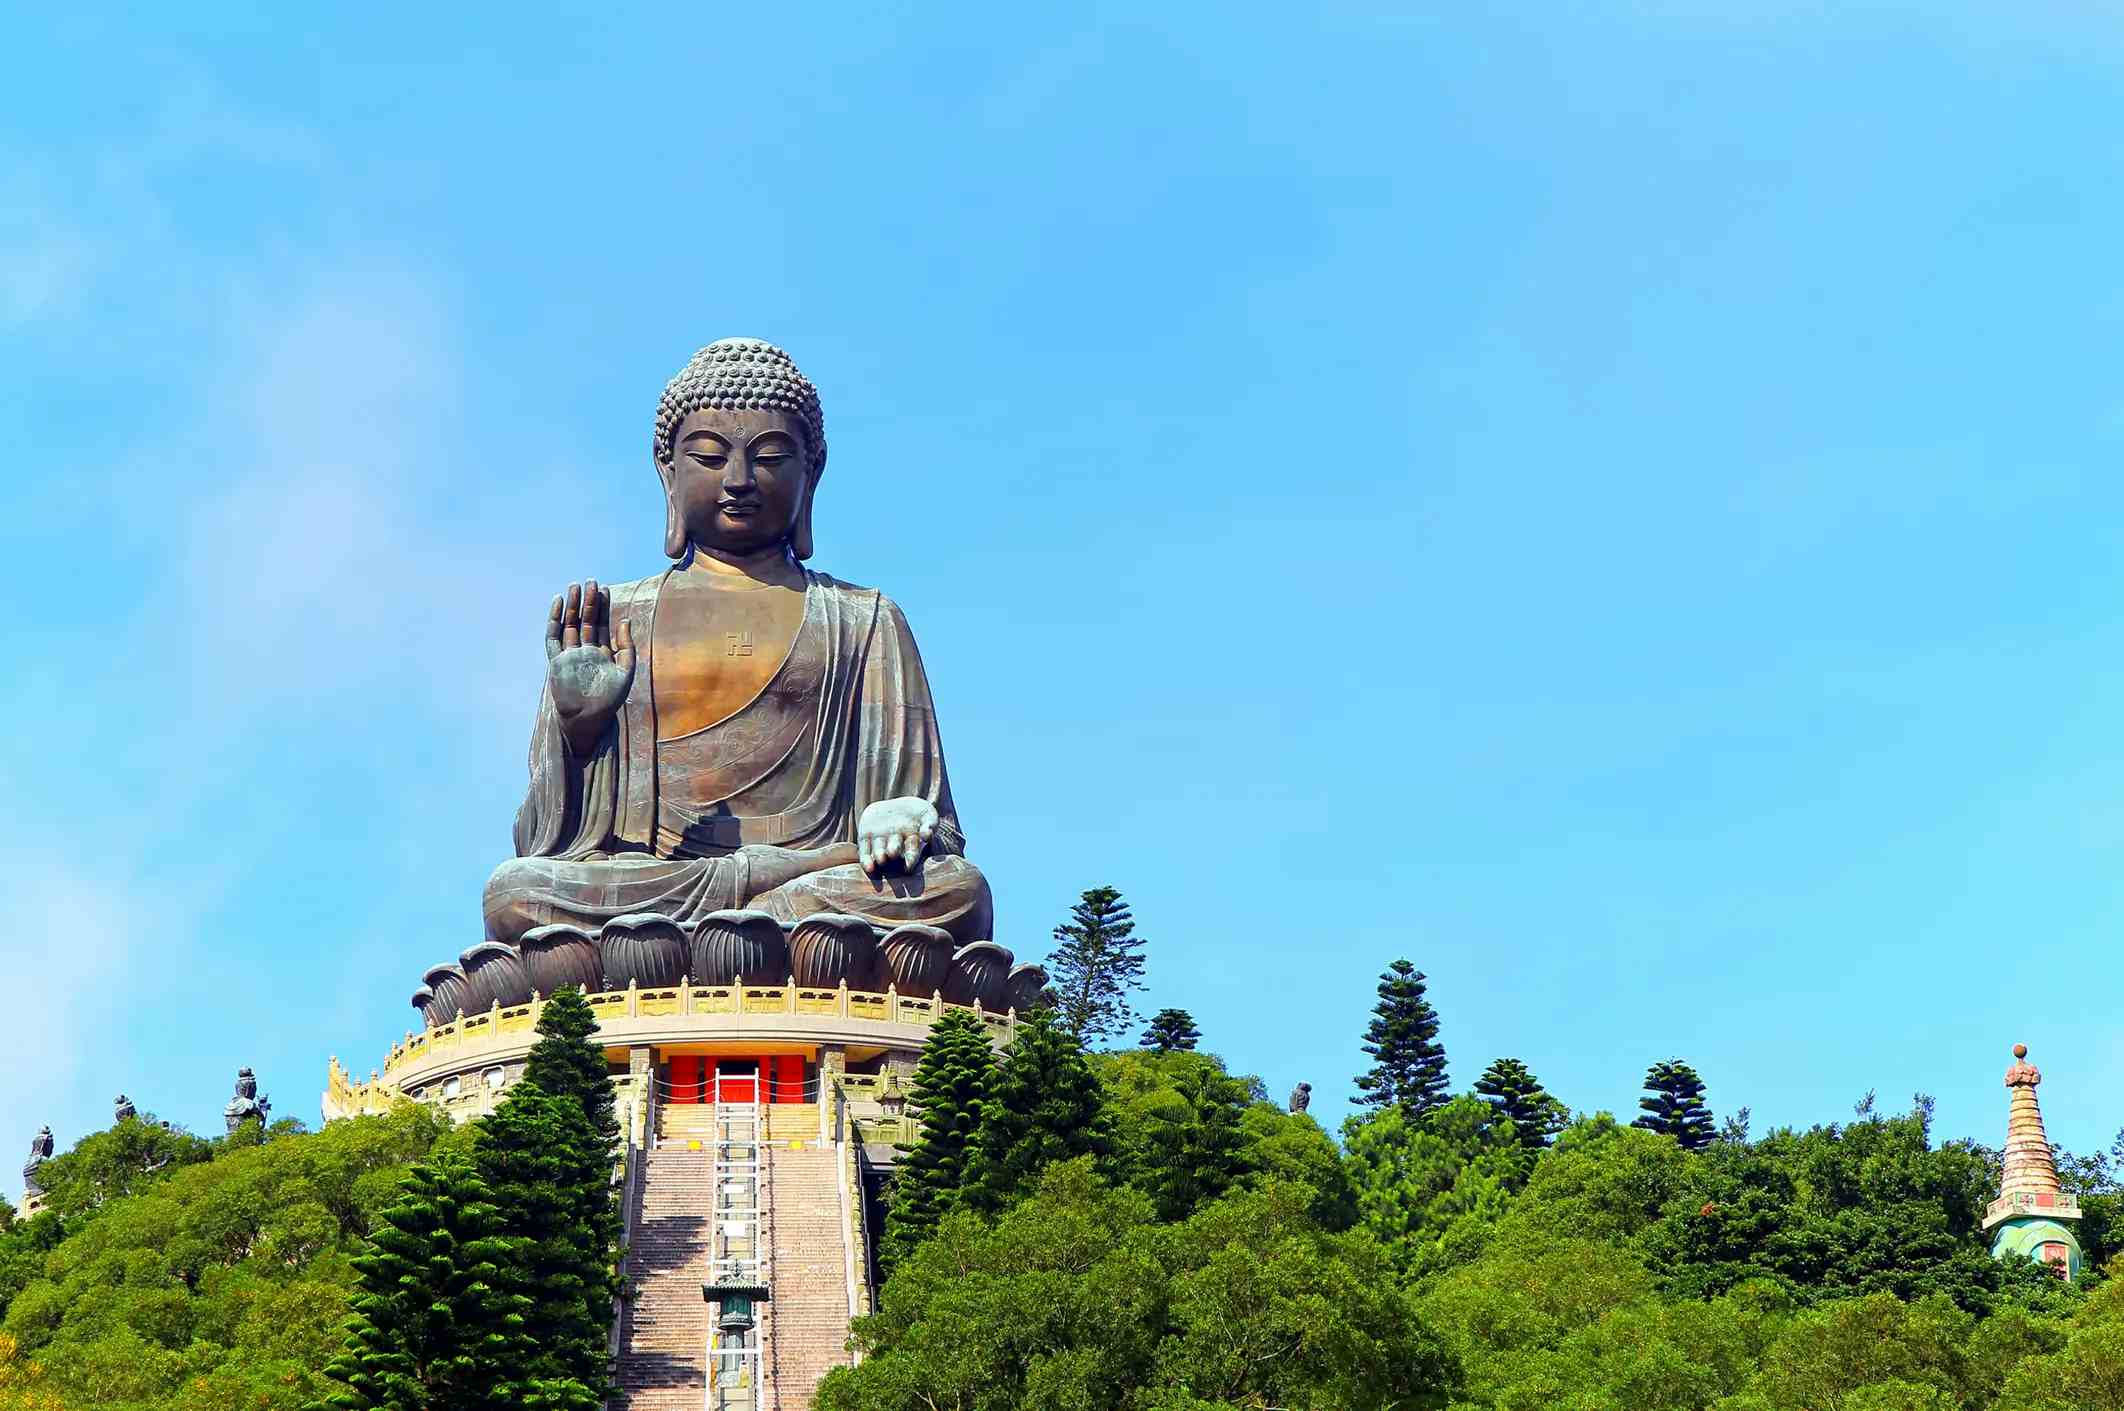 Tian Tan Buddha image